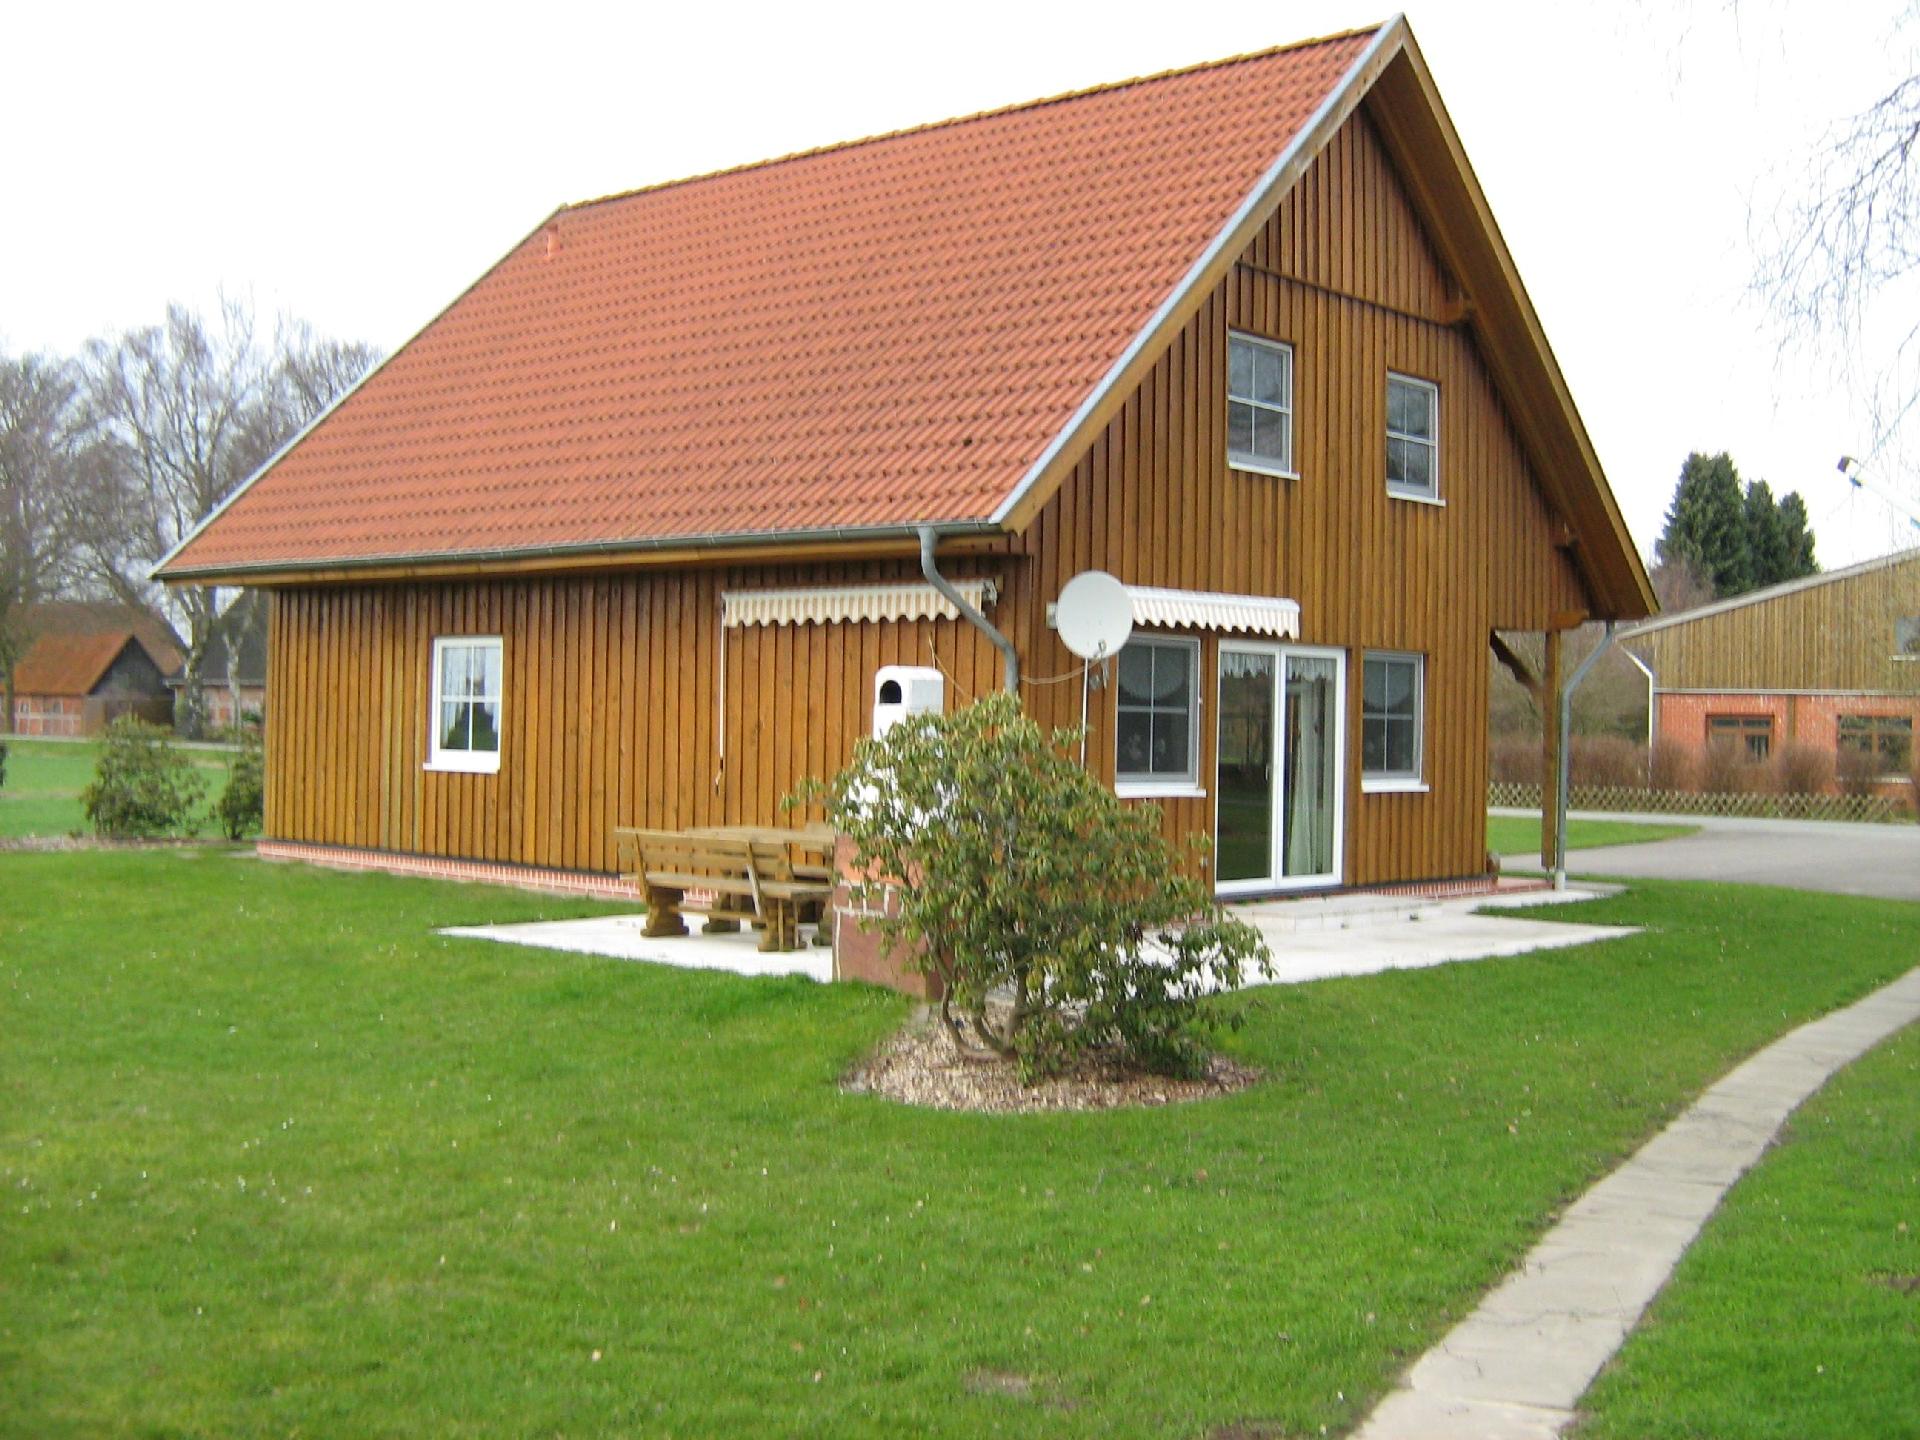 Ferienhaus für 16 Personen mit Terrasse Ferienhaus in Deutschland